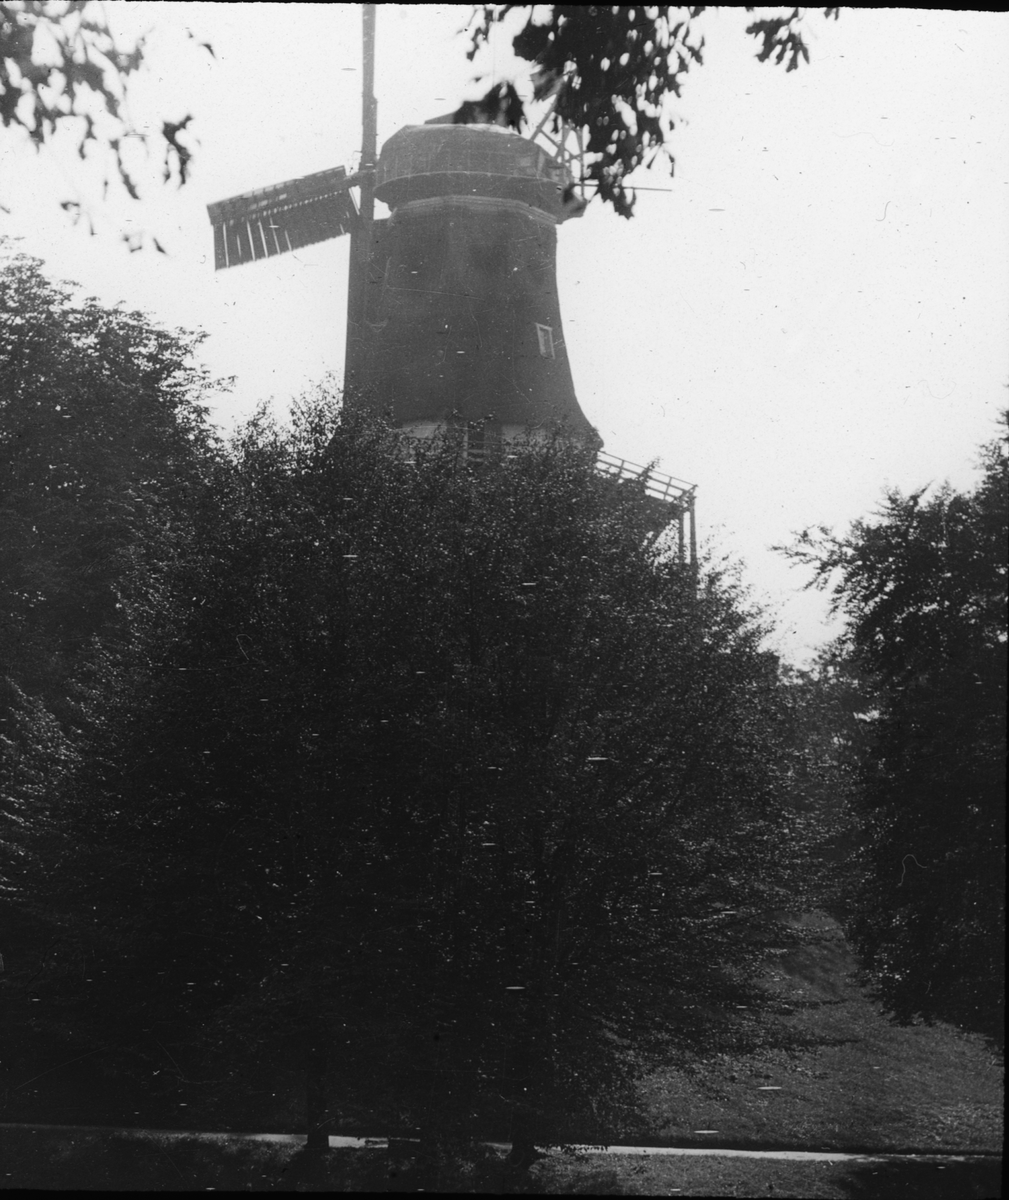 Skioptikonbild med motiv av väderkvarn i Bremen.
Bilden har förvarats i kartong märkt: Resan 1904. Bremen II. -